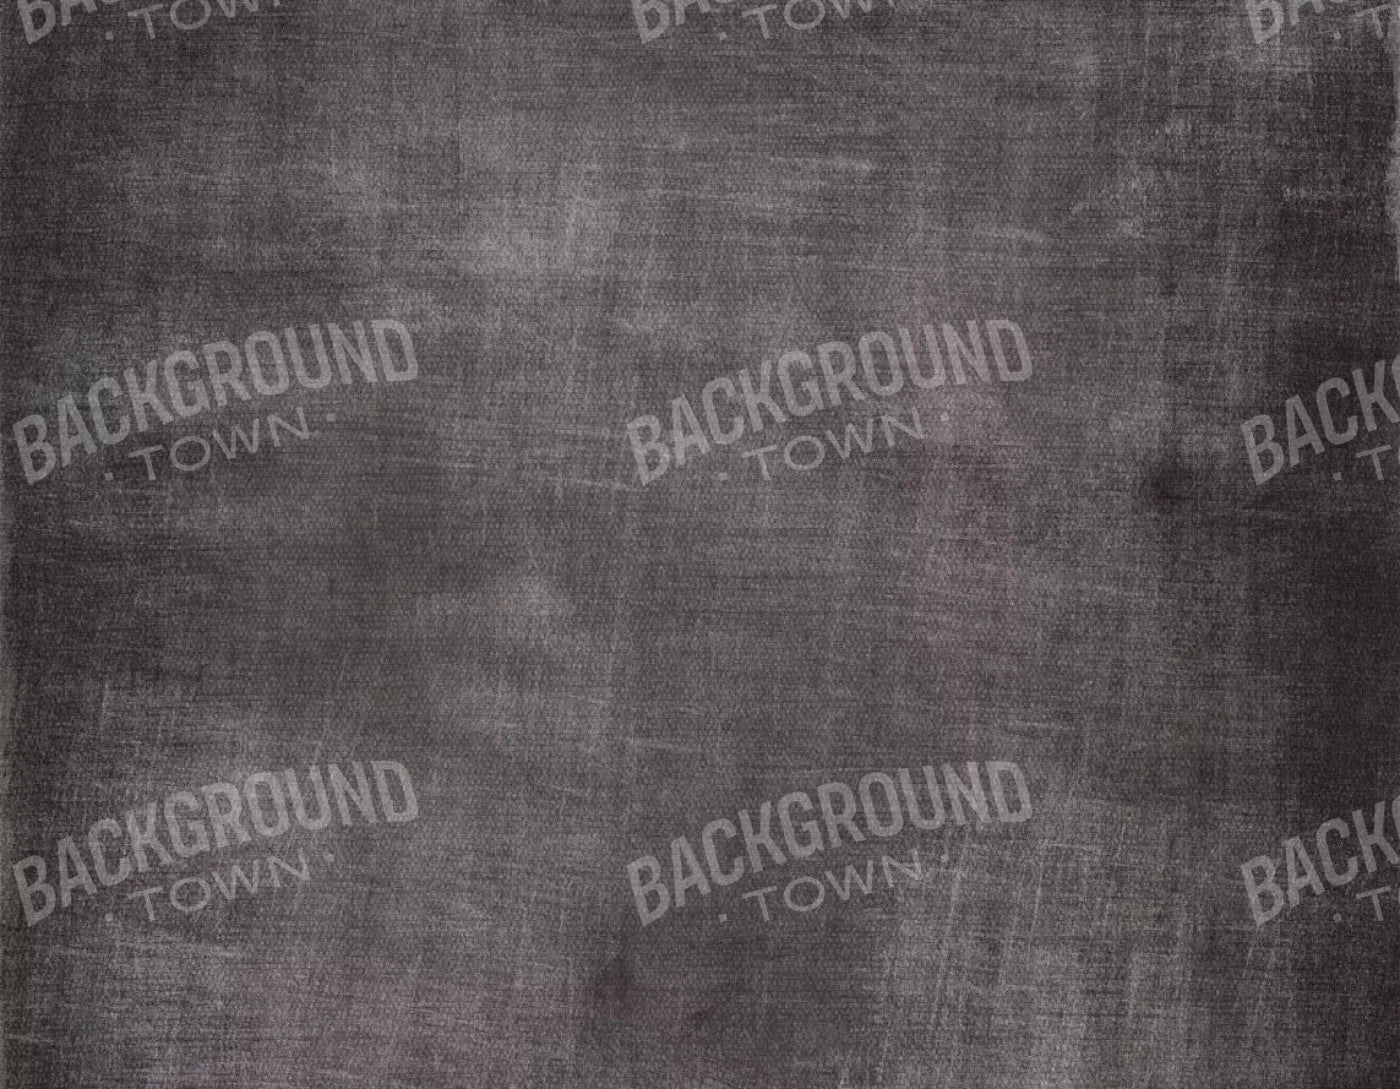 Blackboard 8X6 Fleece ( 96 X 72 Inch ) Backdrop